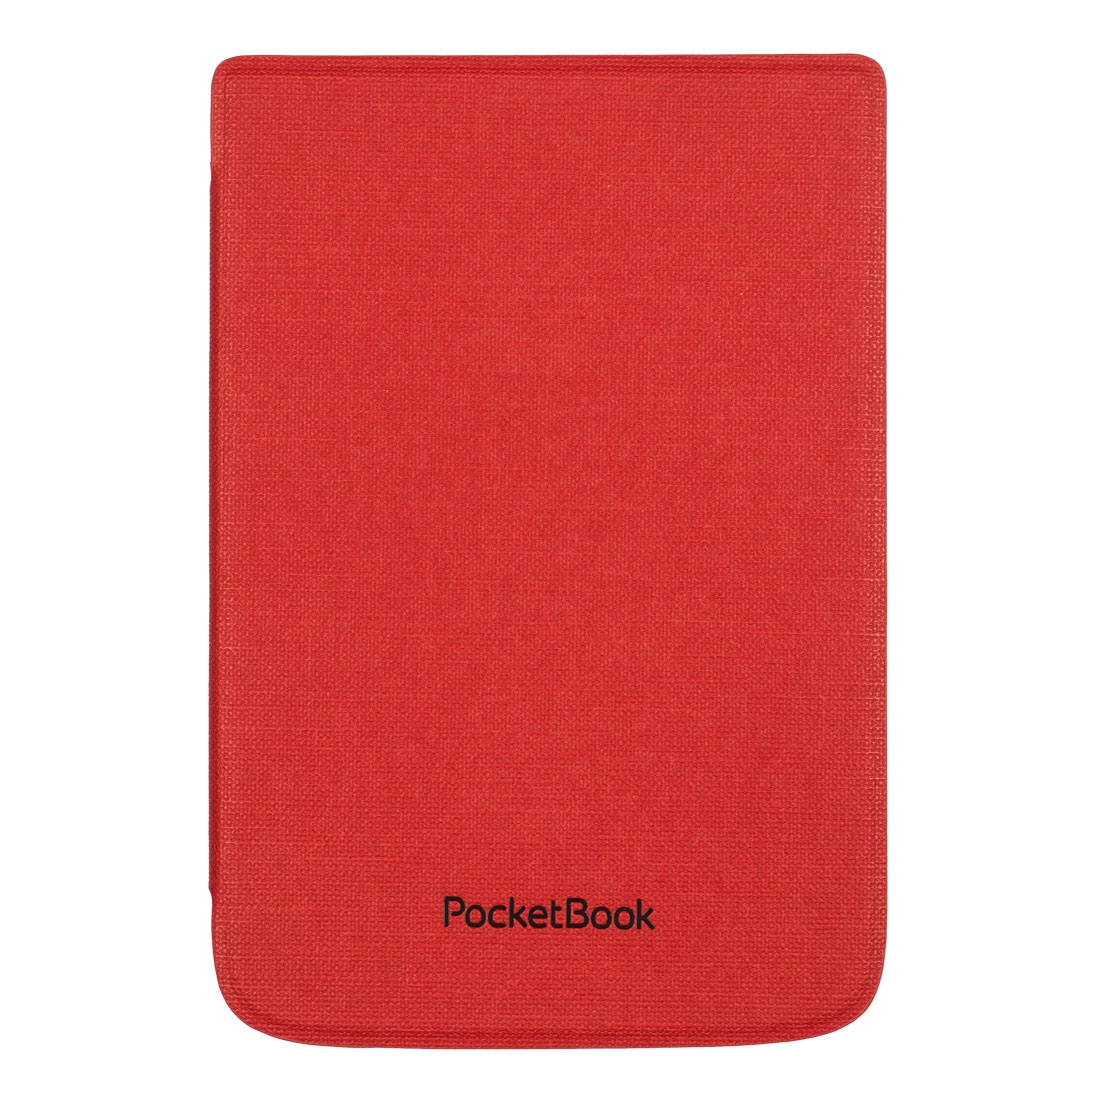 Etui PocketBook do modeli Lux 4 i 5, Touch HD 3 i Basic Lux 2 czerwone